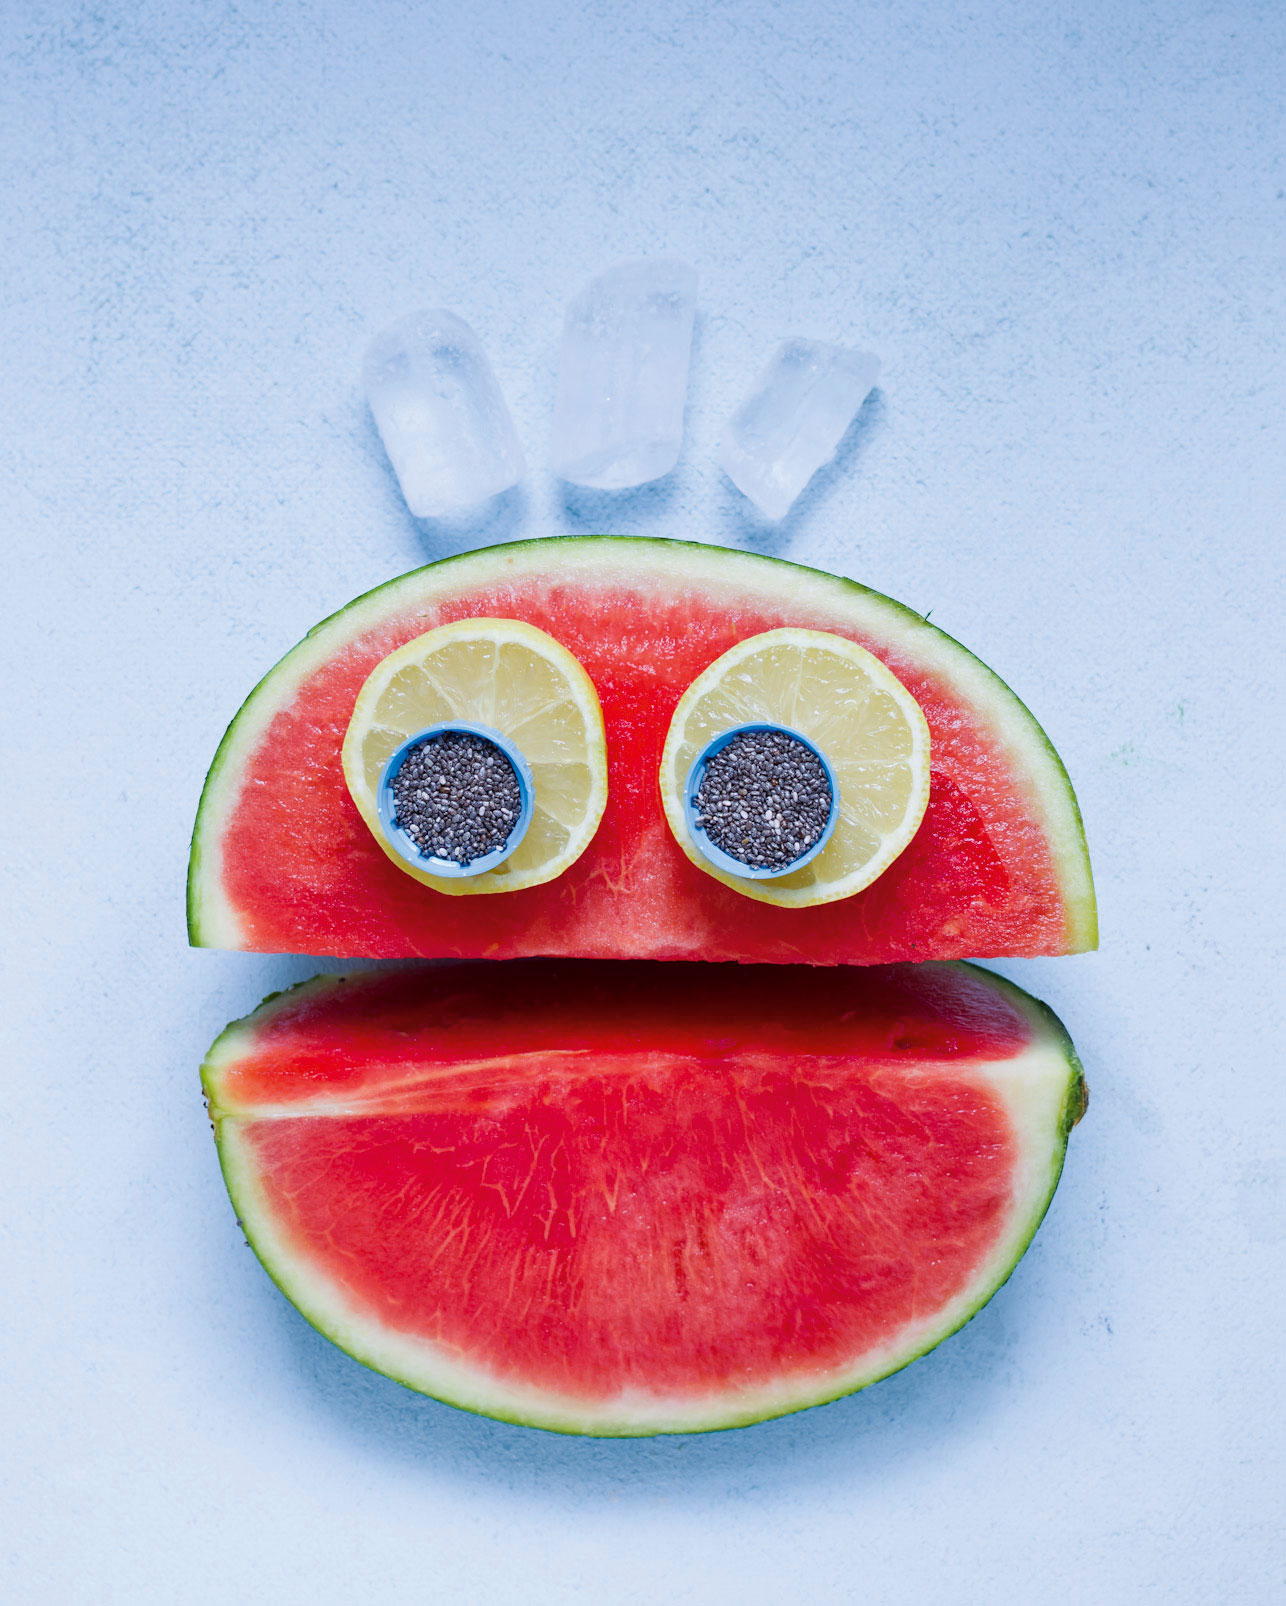 Melonengesicht: Halbe Wassermelone dekoriert mit Zitronenscheiben und Chiasamen als Augen